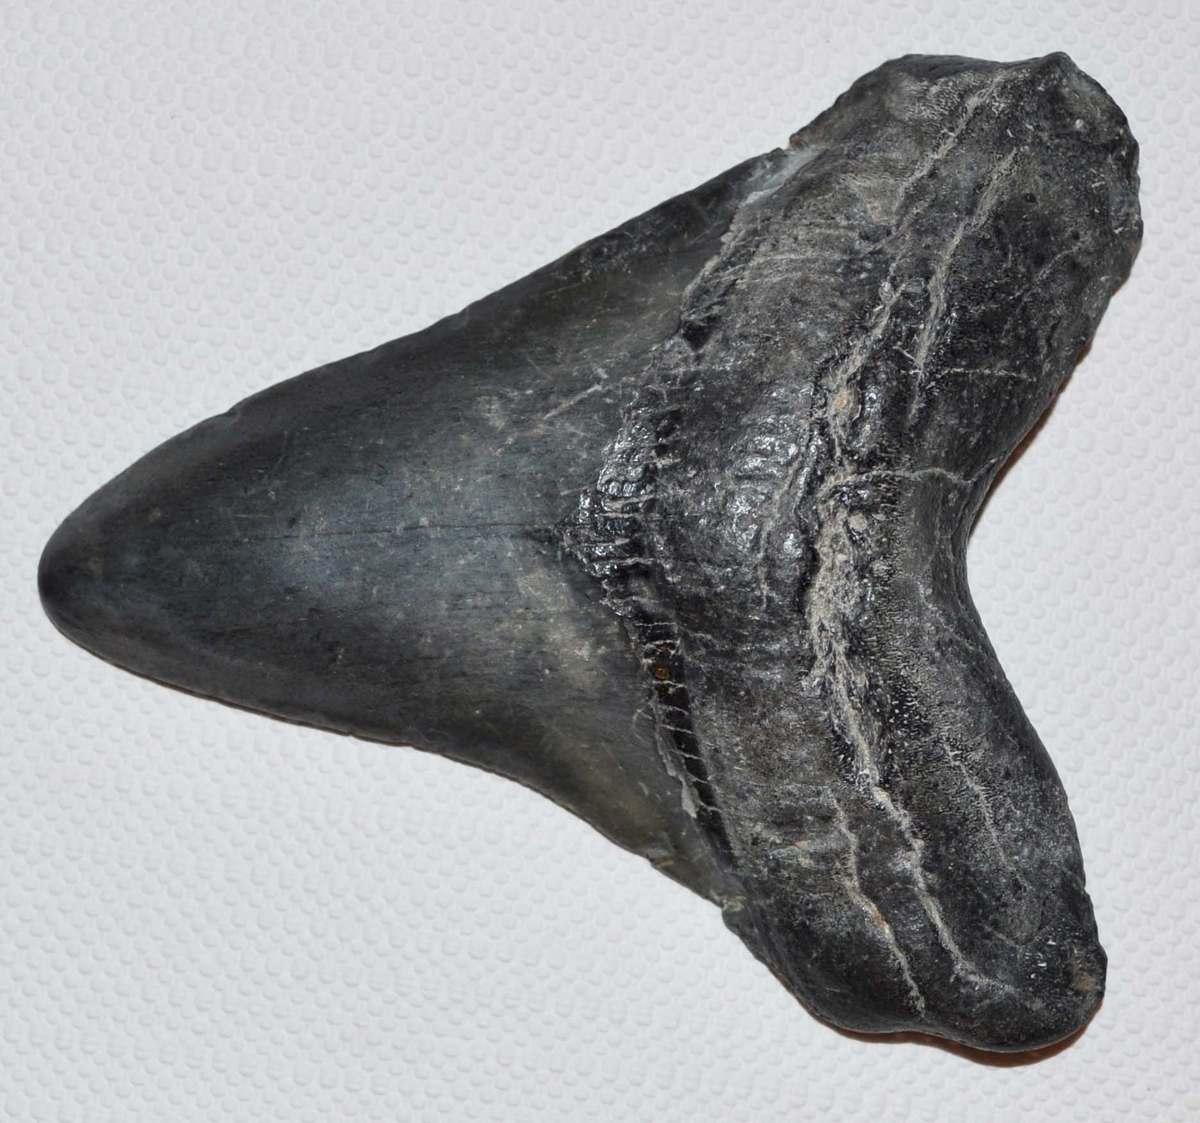 Fossil hajtand av arten Charcharocles megalodon, en stor vithaj som levde under tertiärtid och dog ut för en eller hågra miljoner år sedan. Tanden är troligtvis importerad, sannolikt från USA.